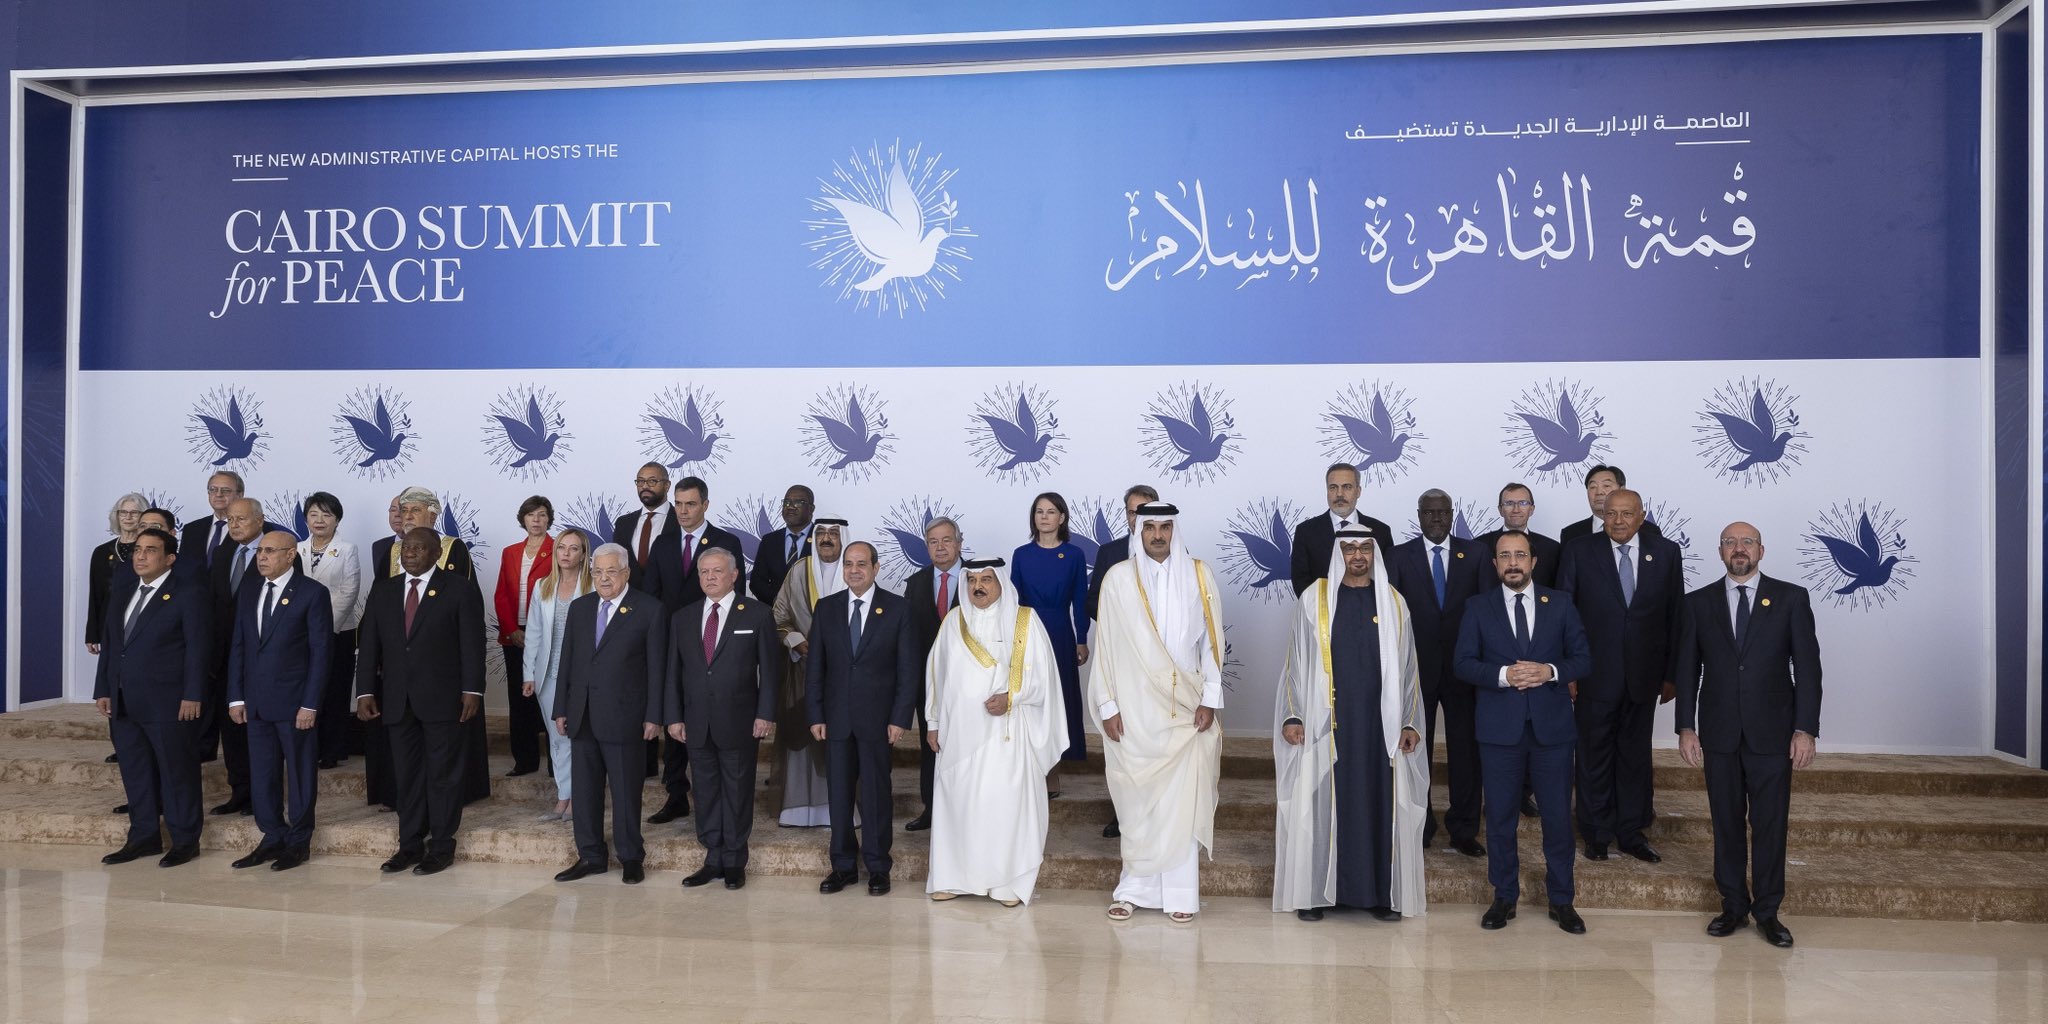 Αίγυπτος: Ποιοι ηγέτες συμμετέχουν στη Σύνοδο Κορυφής του  Καΐρου για την Ειρήνη